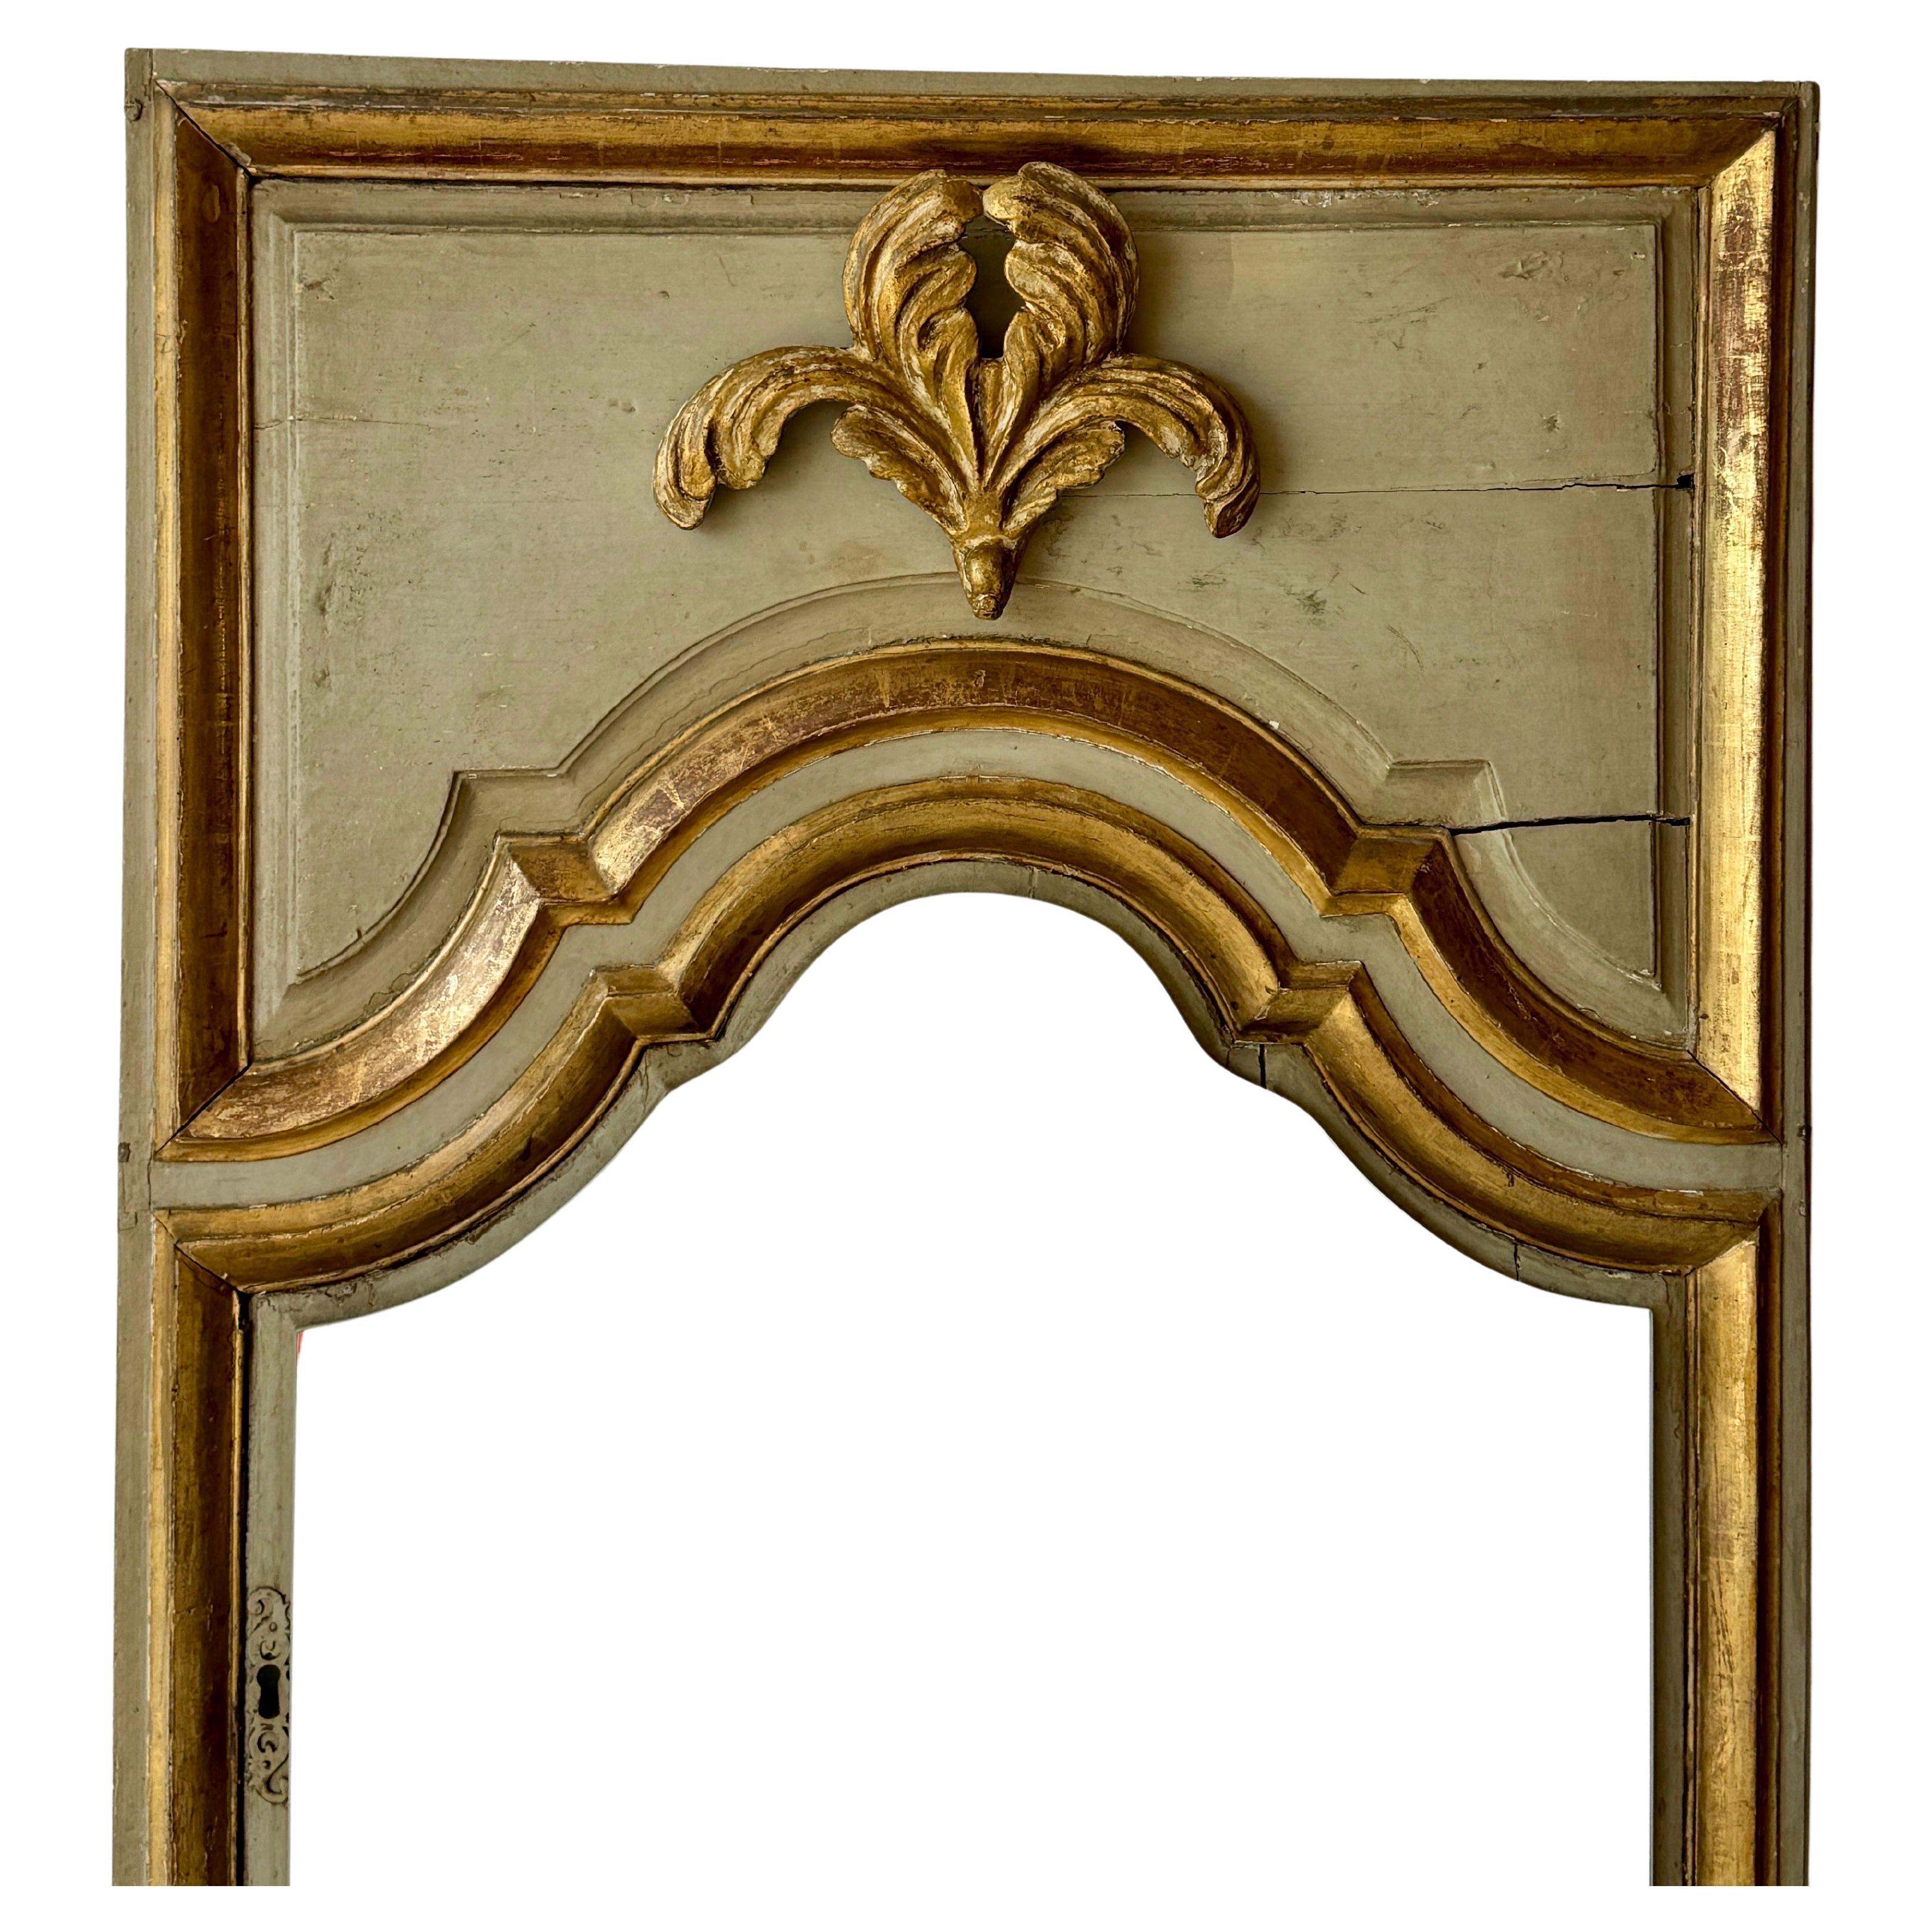 Cette grande porte d'armoire française a été transformée en un miroir de sol unique en son genre, auquel on a ajouté un verre miroir à une date ultérieure. Ce charmant miroir de sol en bois, avec sa peinture d'origine et ses dorures, est une pièce